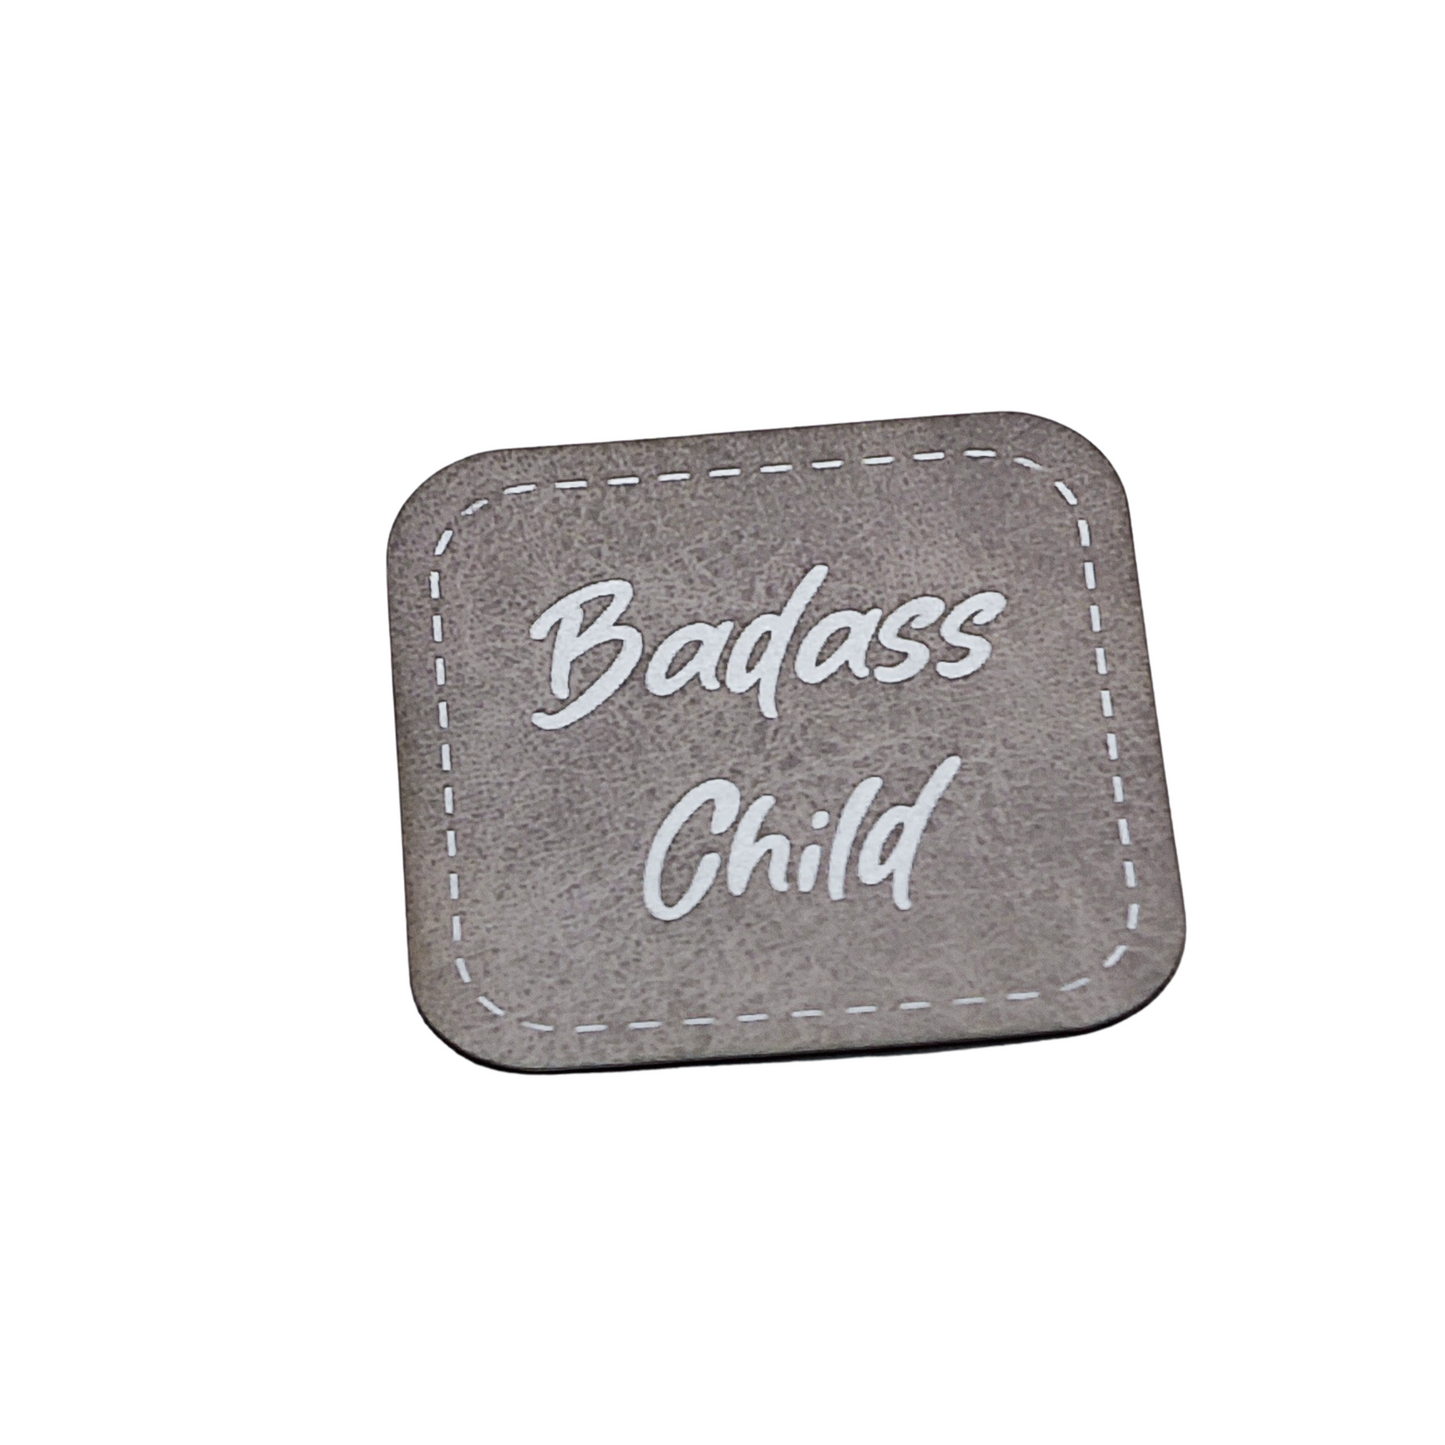 Aufnäher Label CRAZY "BADASS CHILD" grau aus Kunstleder